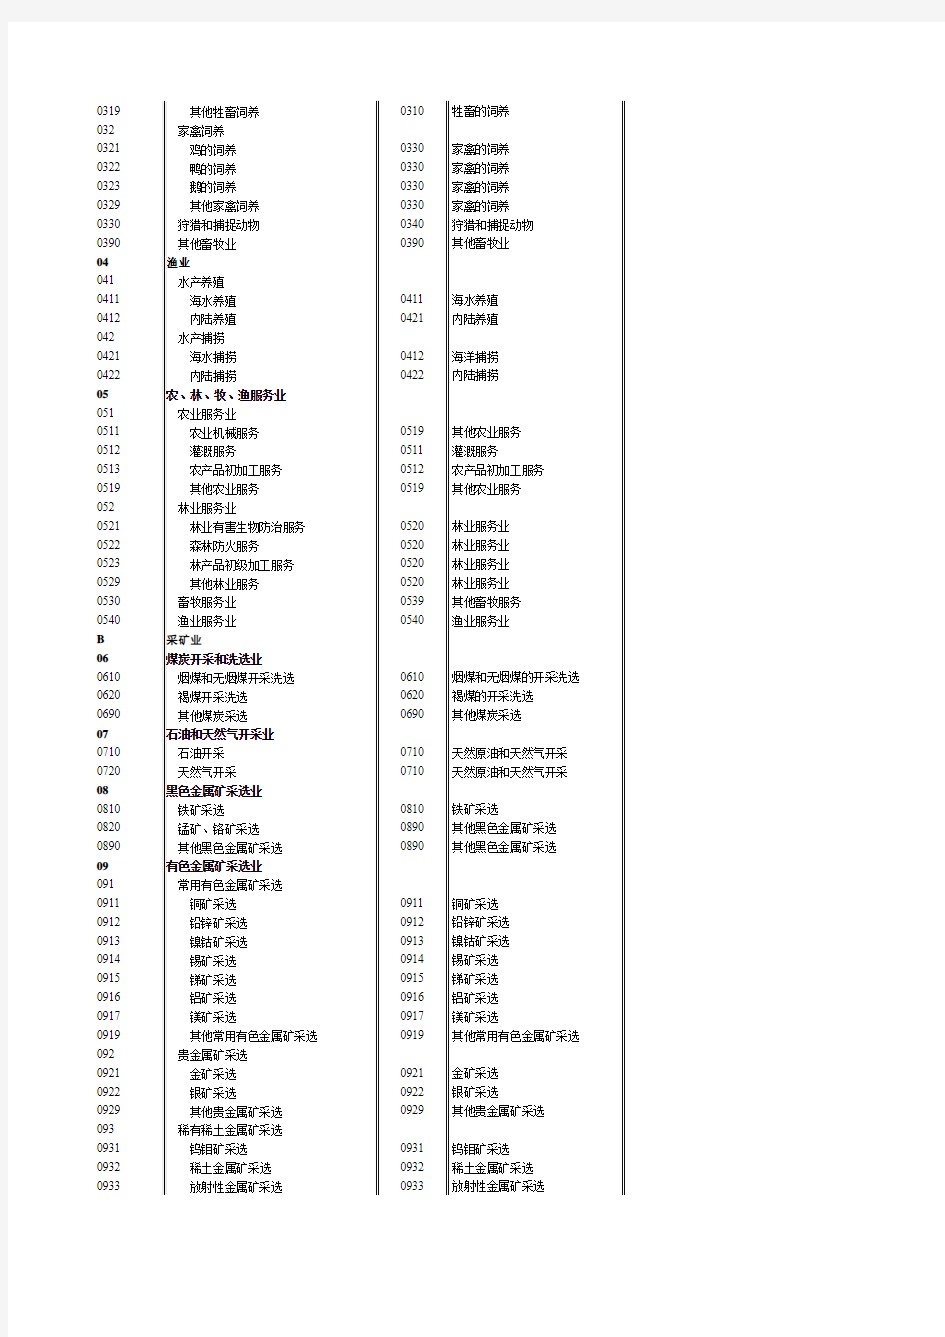 《国民经济行业分类代码》GBT4754-2011(新旧对比版)汇编